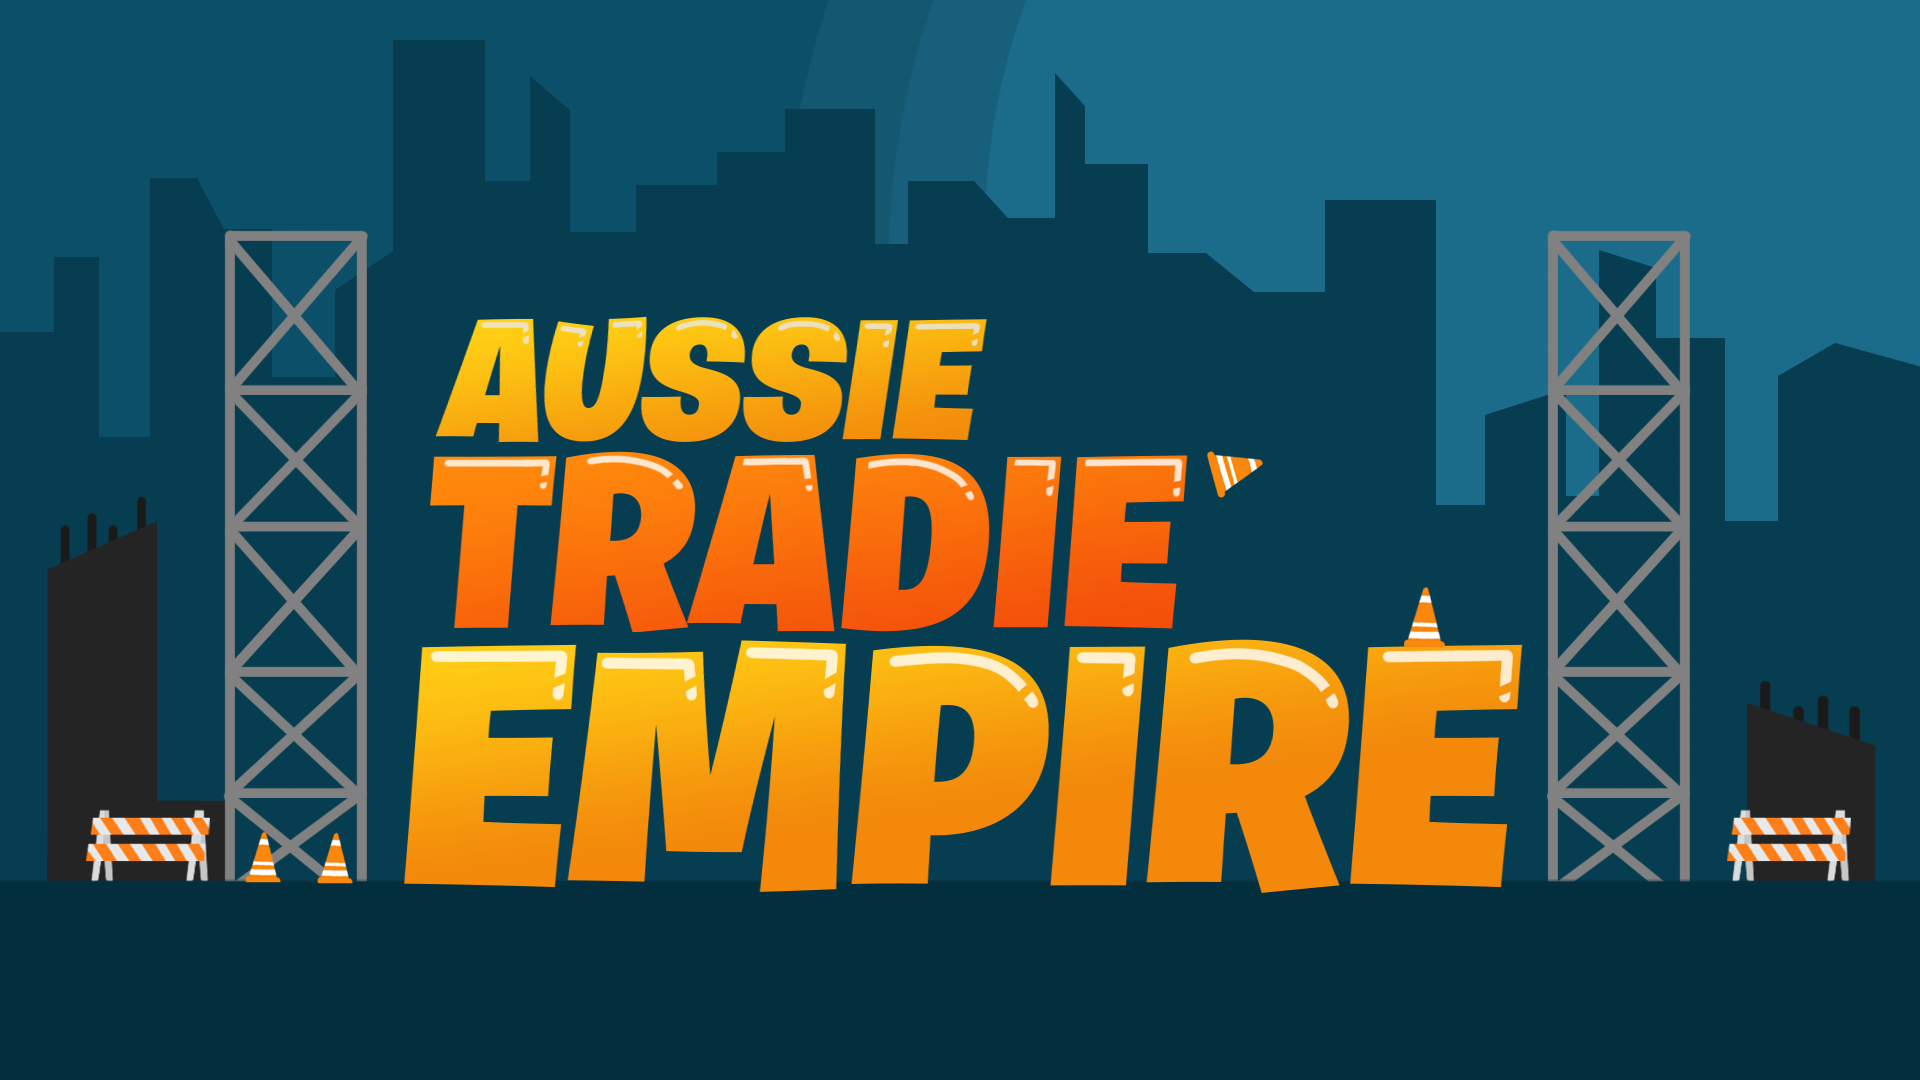 Aussie Tradie Empire-1557-8150-3260